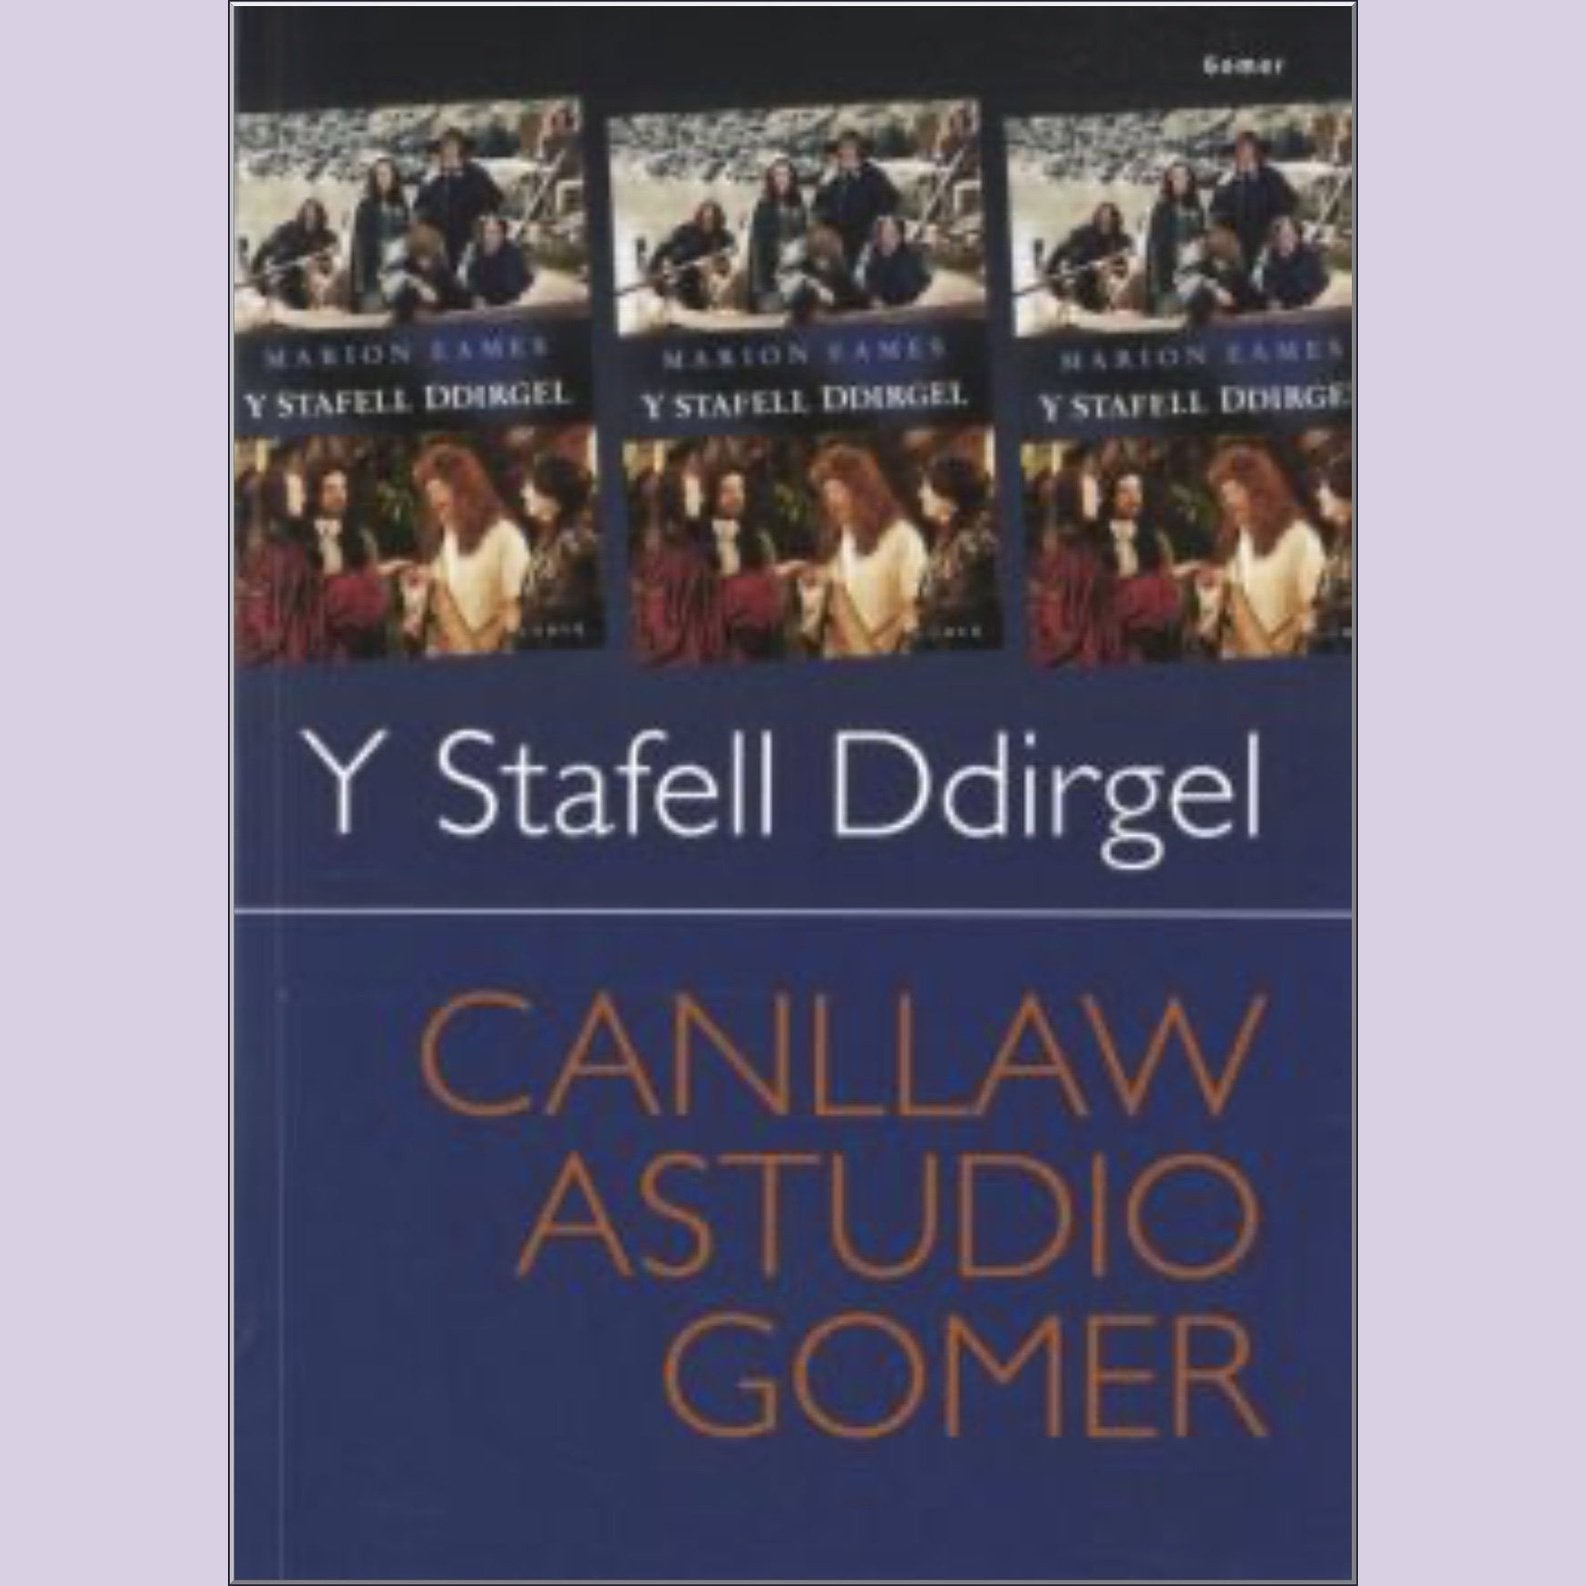 Canllaw Astudio Gomer: Y Stafell Ddirgel - Siop y Pethe